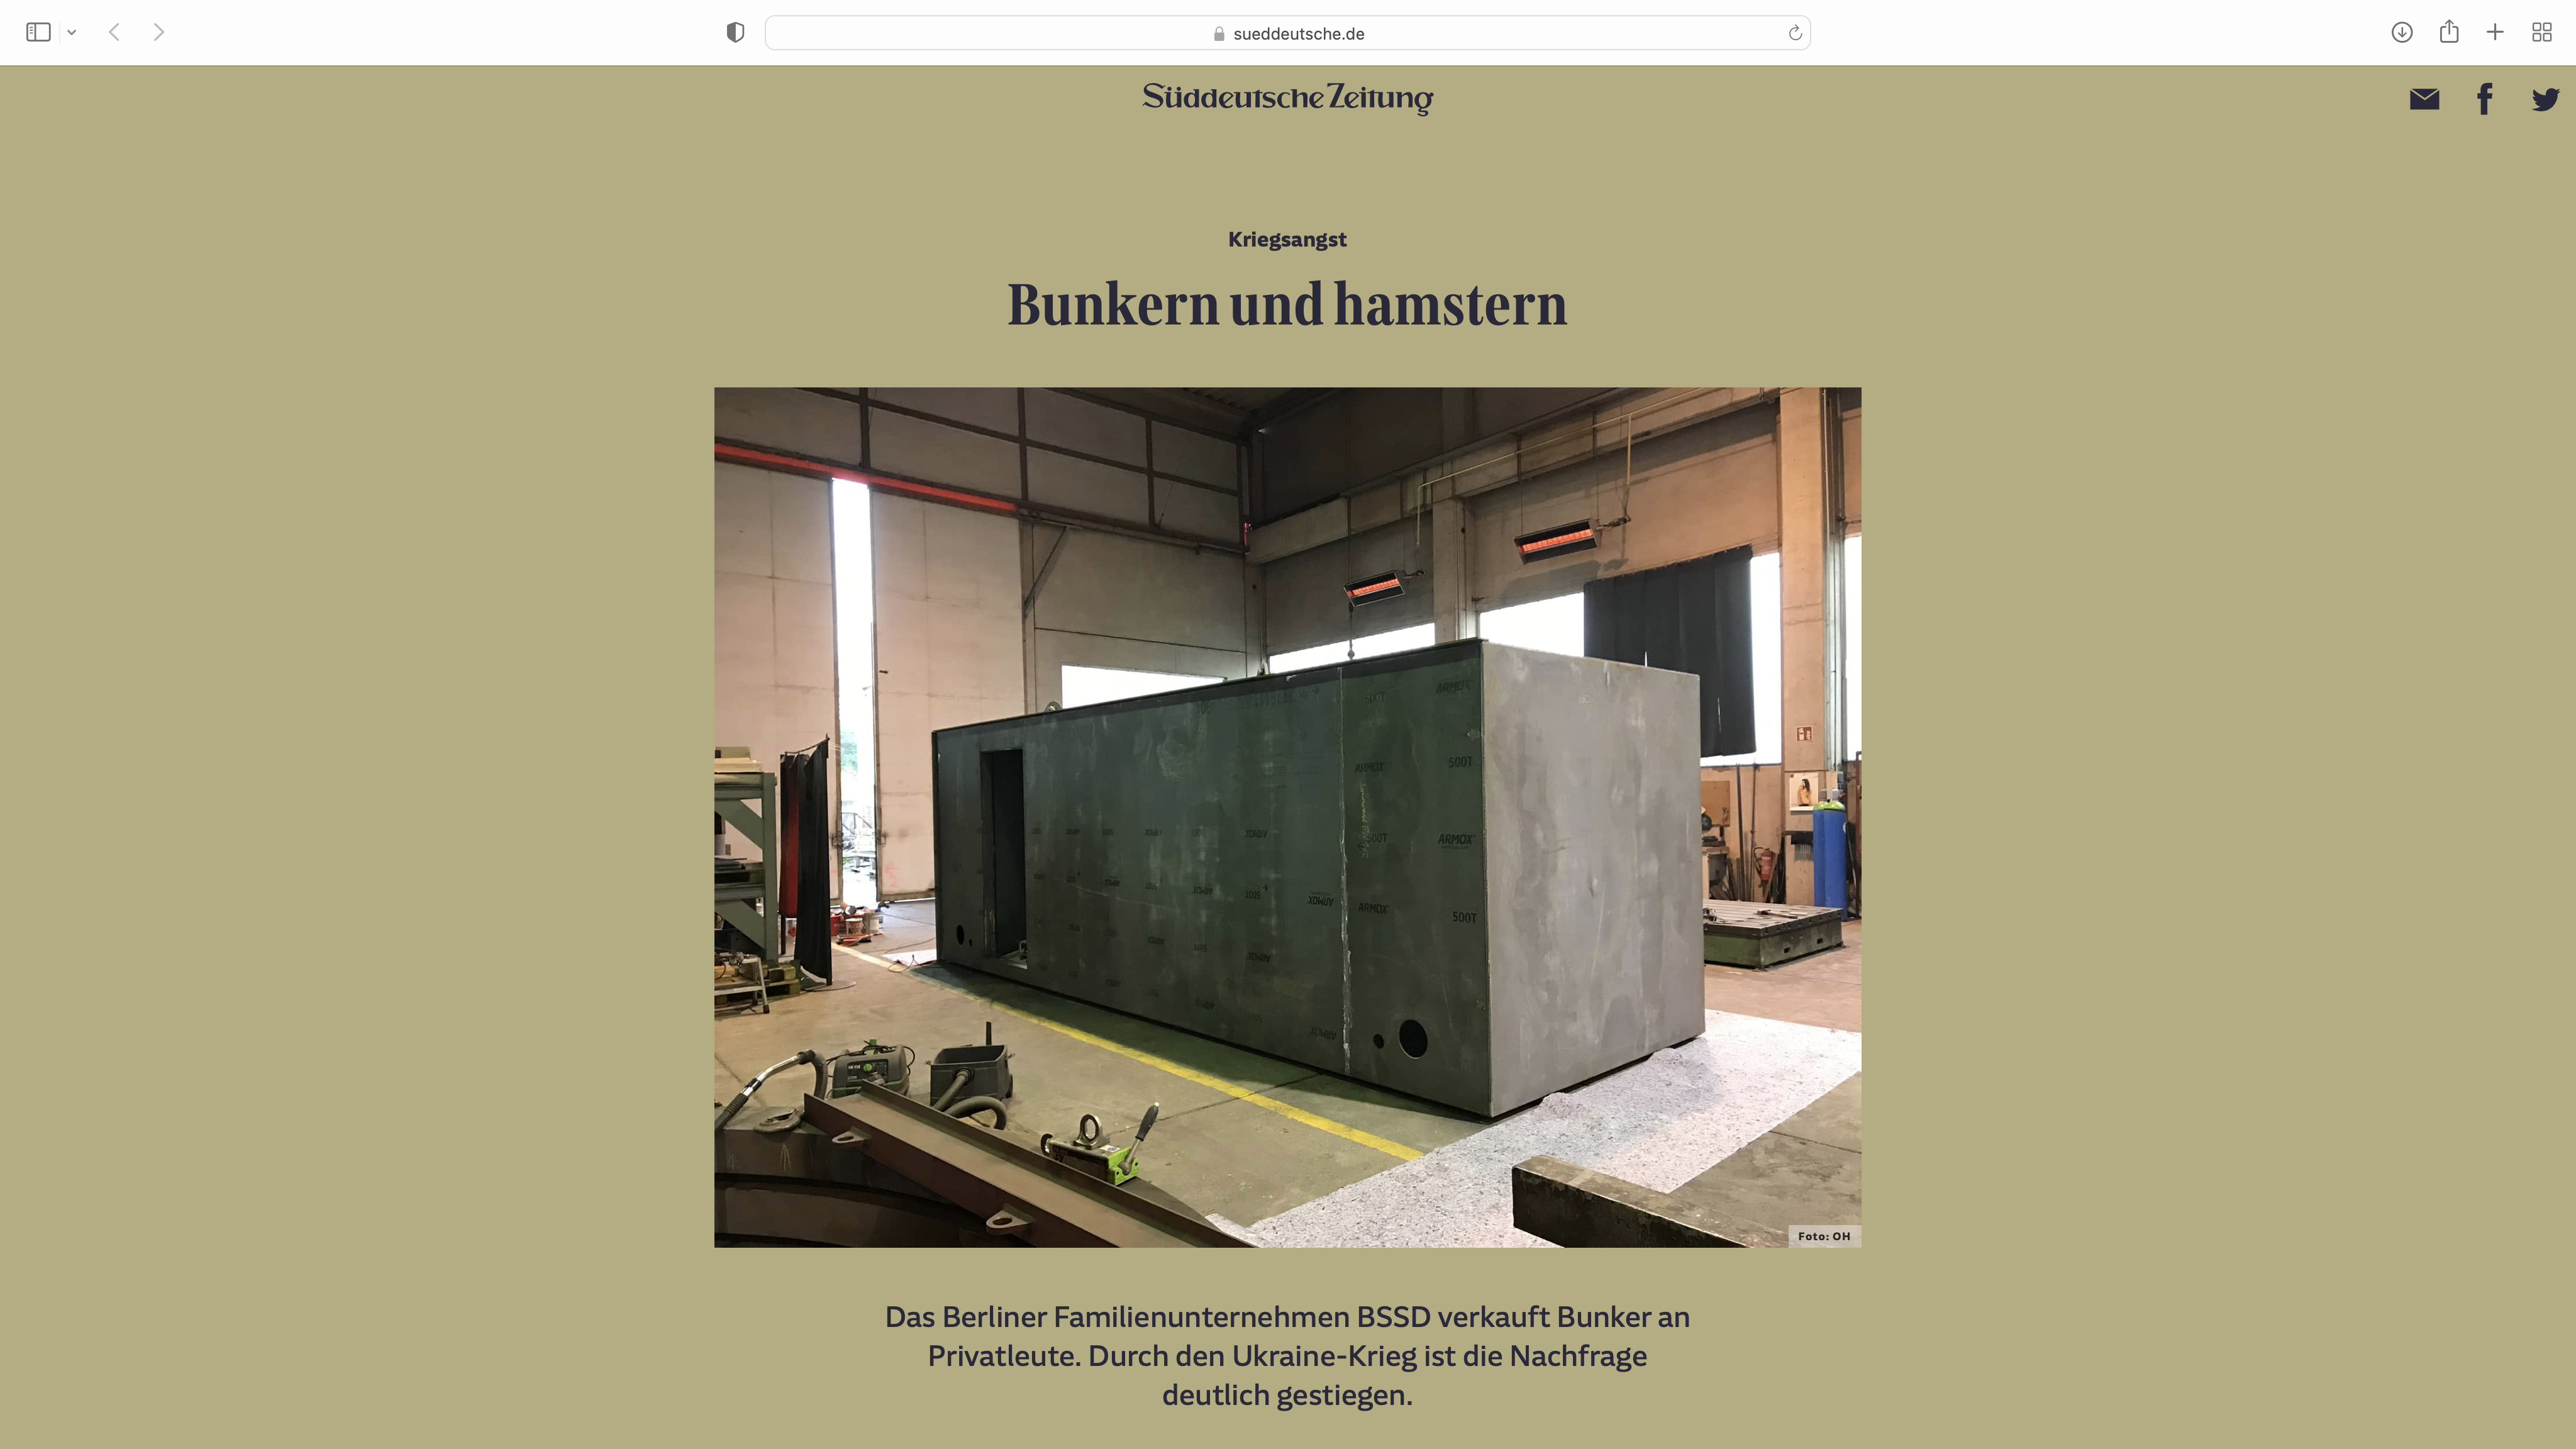 Bunkern und Hamstern Artikel in der Süddeutschen Zeitung